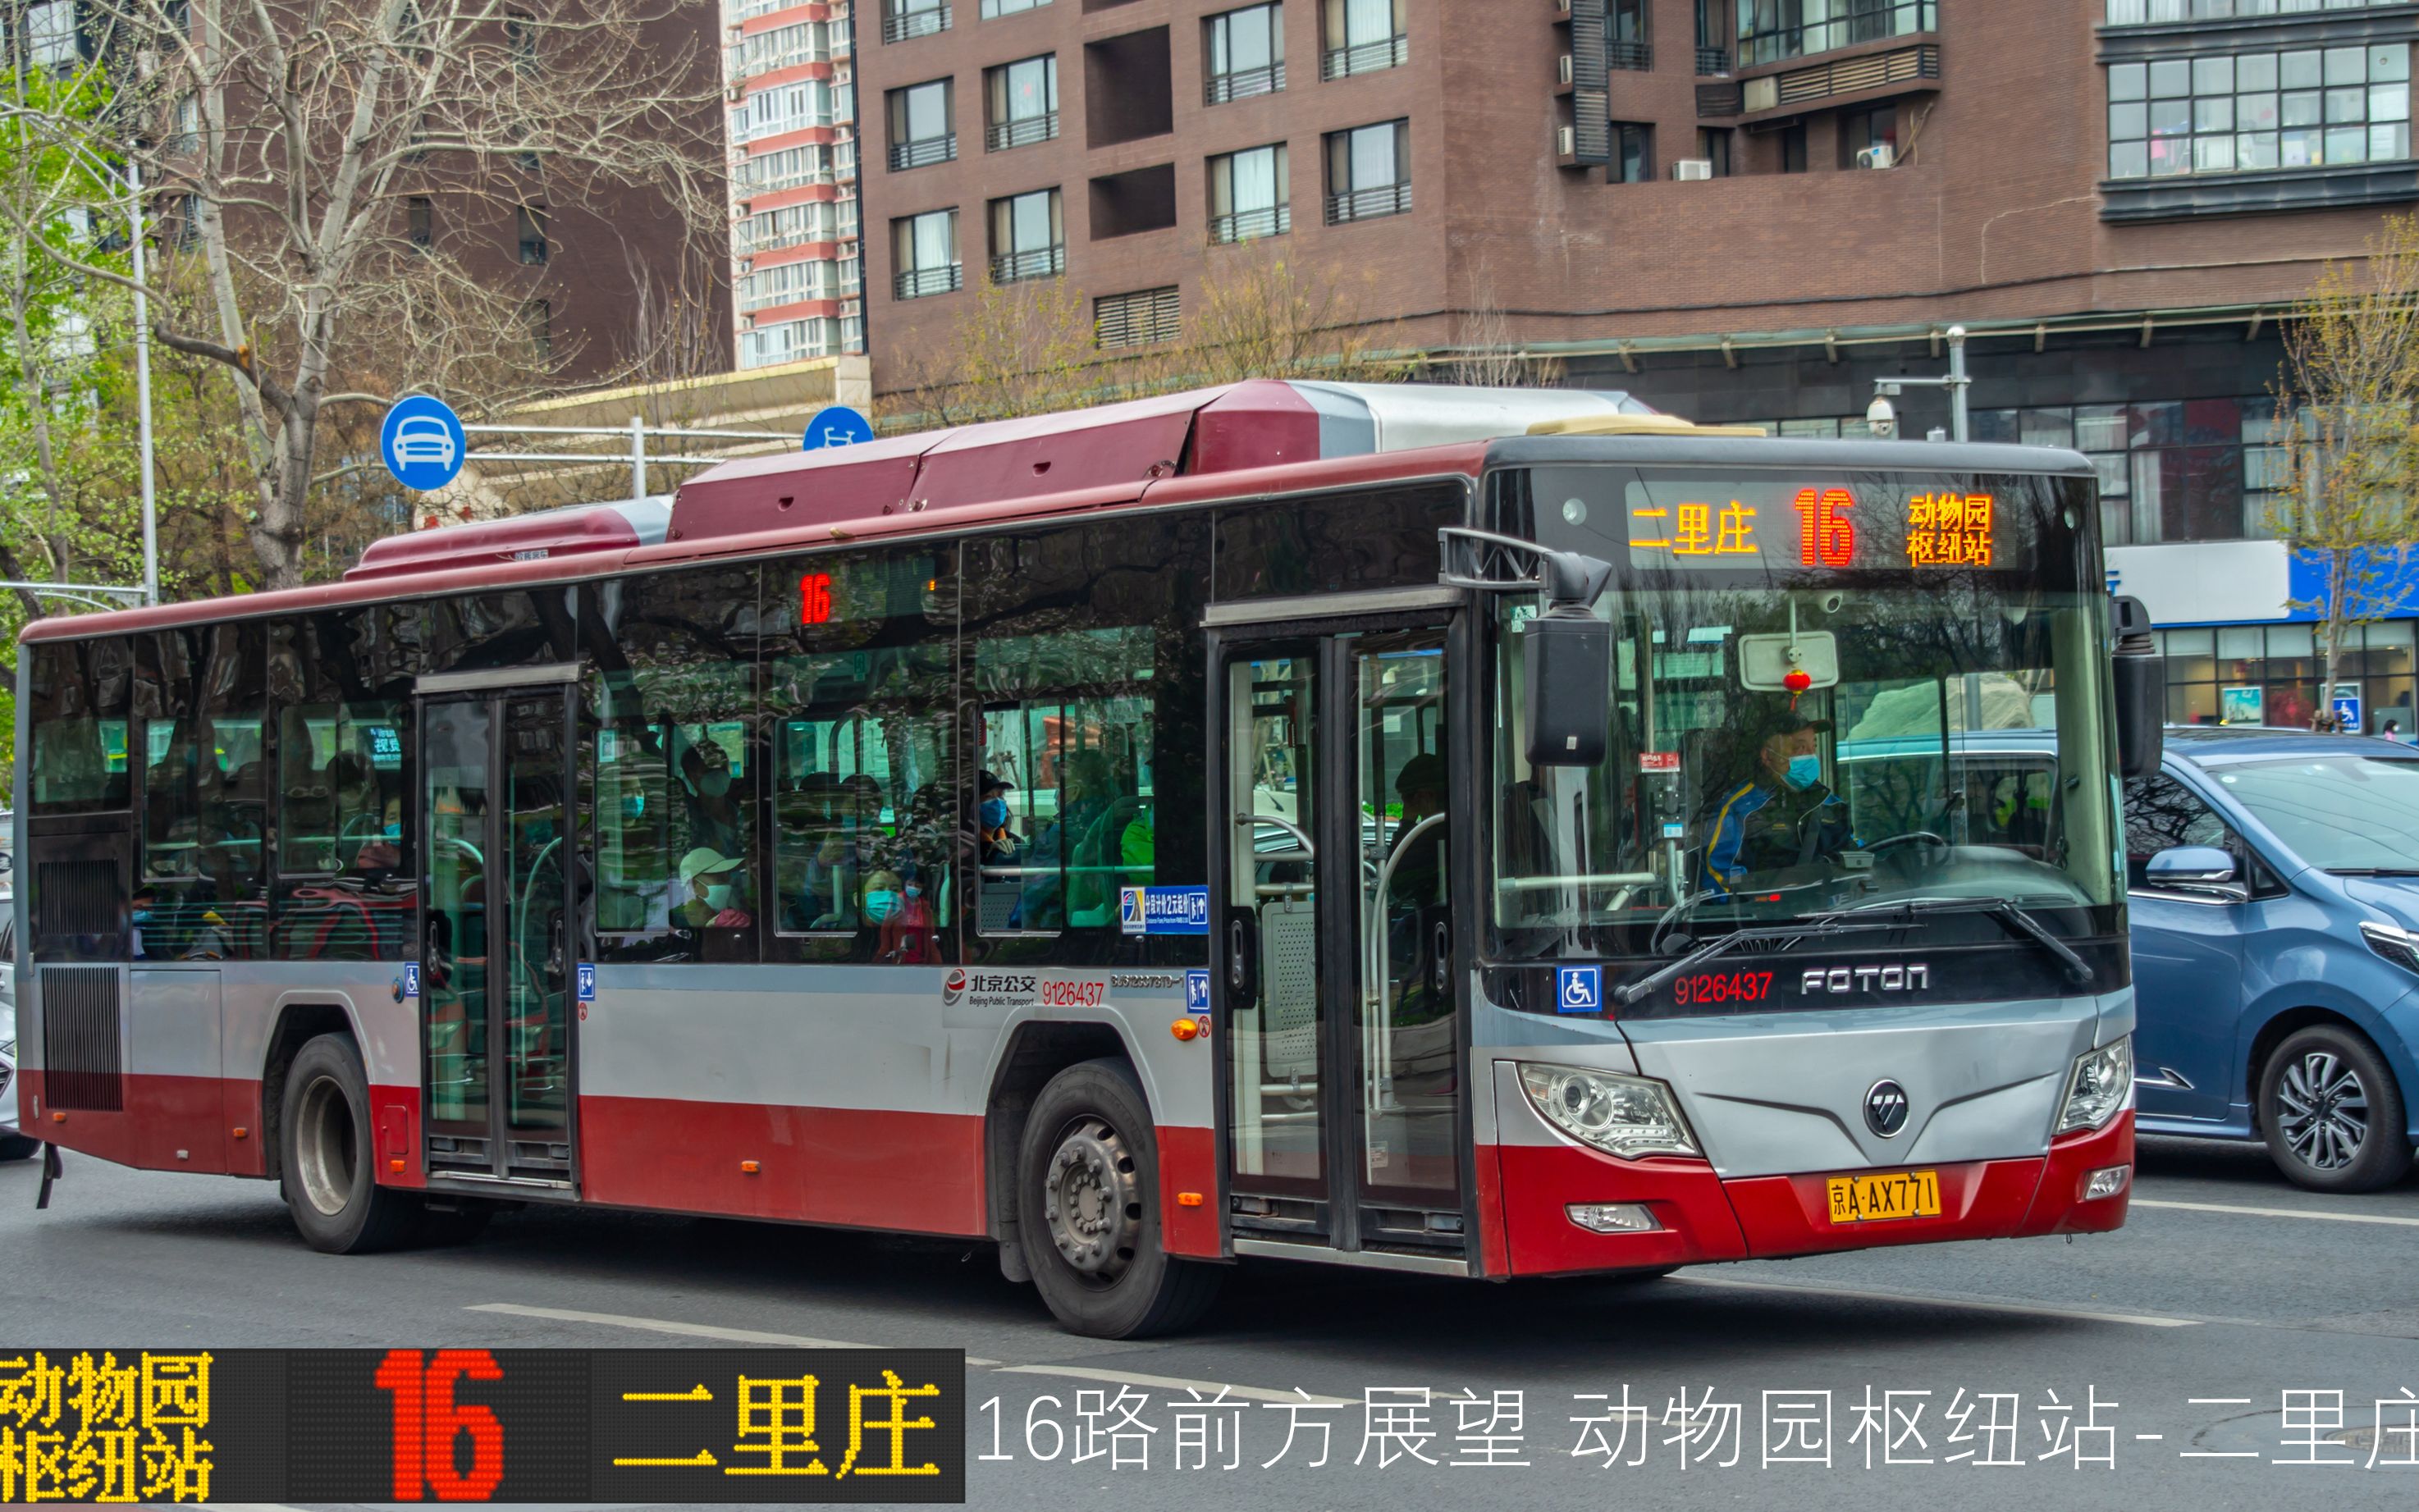 呆萌熊猫公交车现身滨江，上海公交来了颜值担当 - 封面新闻